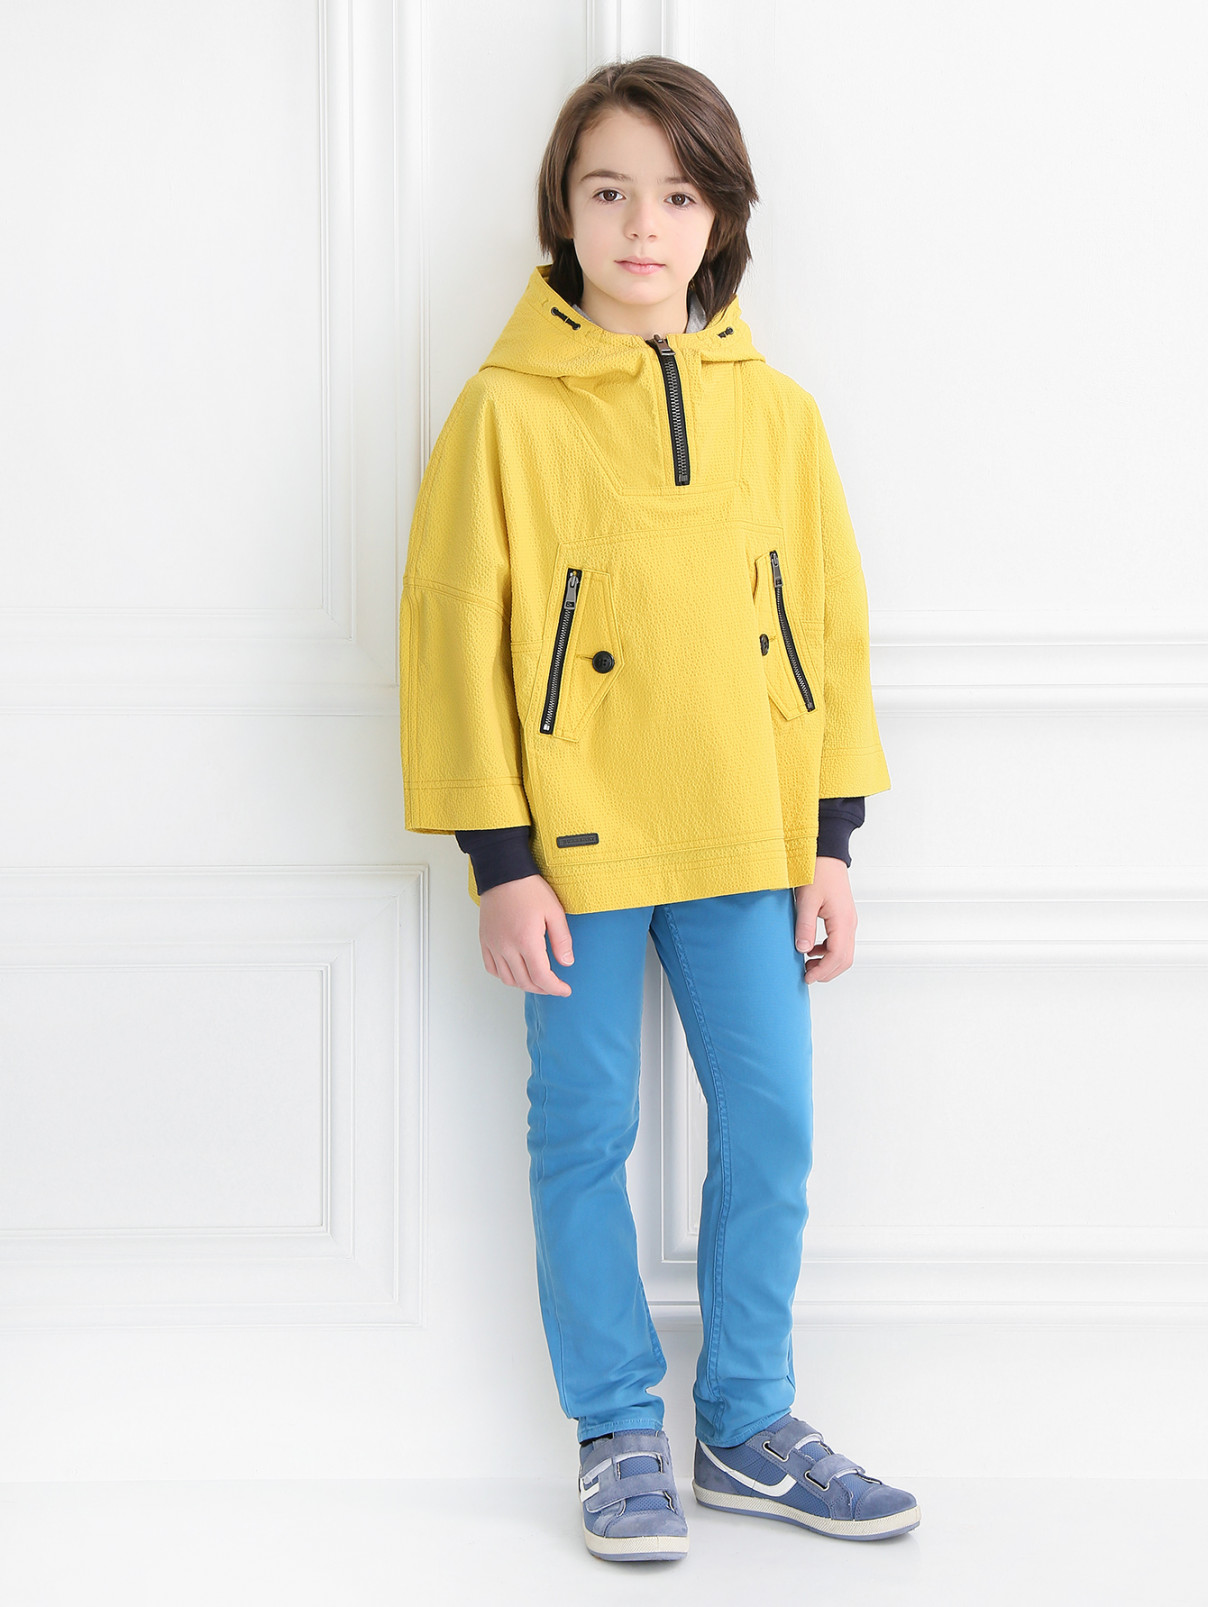 Легкая куртка с капюшоном и двумя боковыми карманами Burberry  –  Модель Общий вид  – Цвет:  Желтый